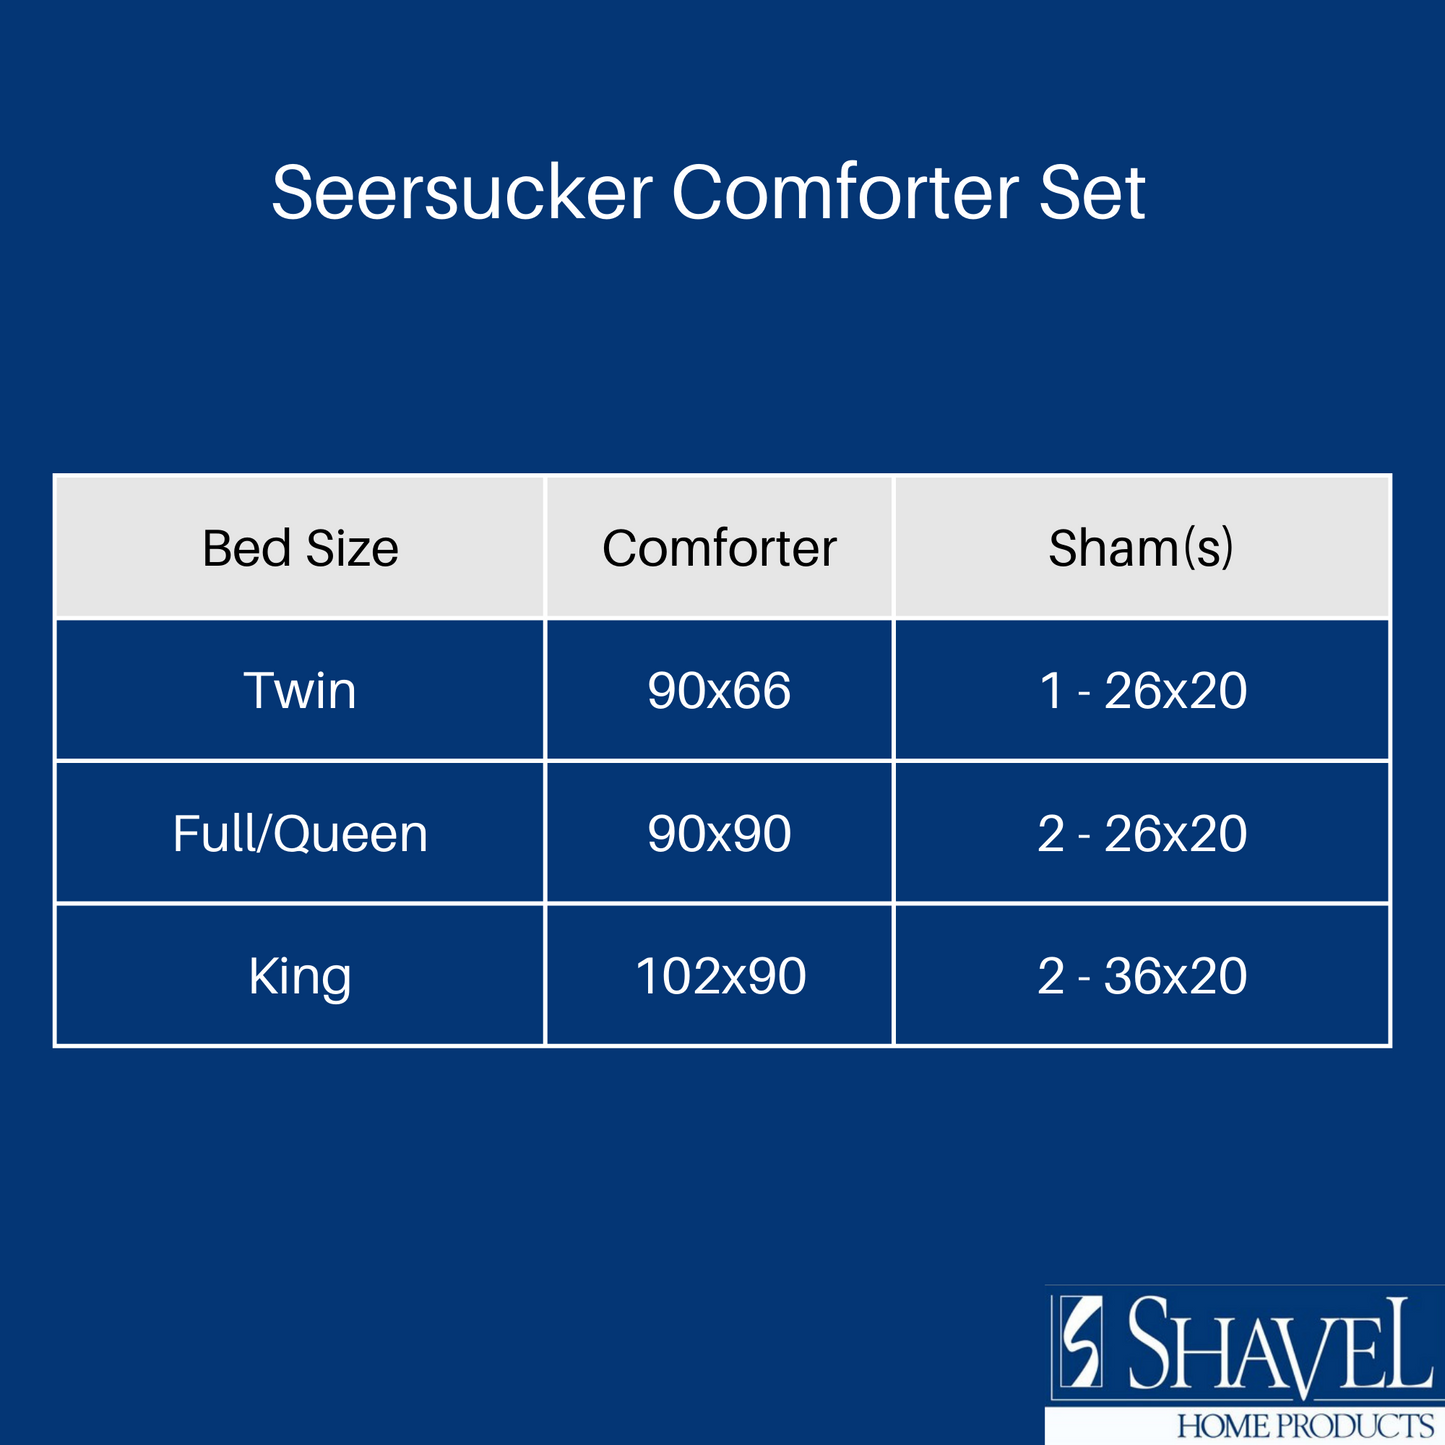 Seersucker Comforter Sets